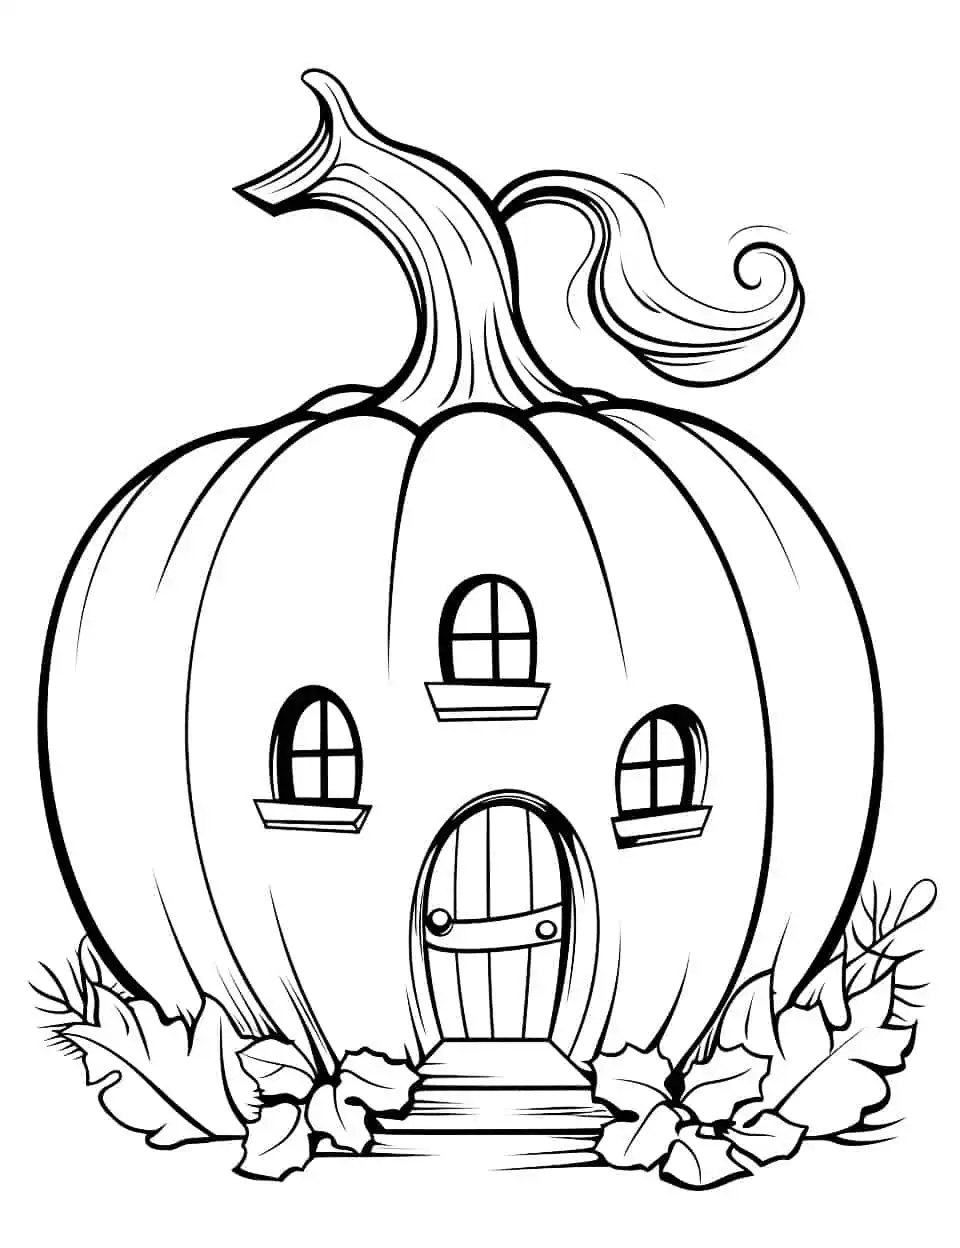 Pumpkin House Coloring Page - A creative scene of a fairy-tale-like pumpkin house.